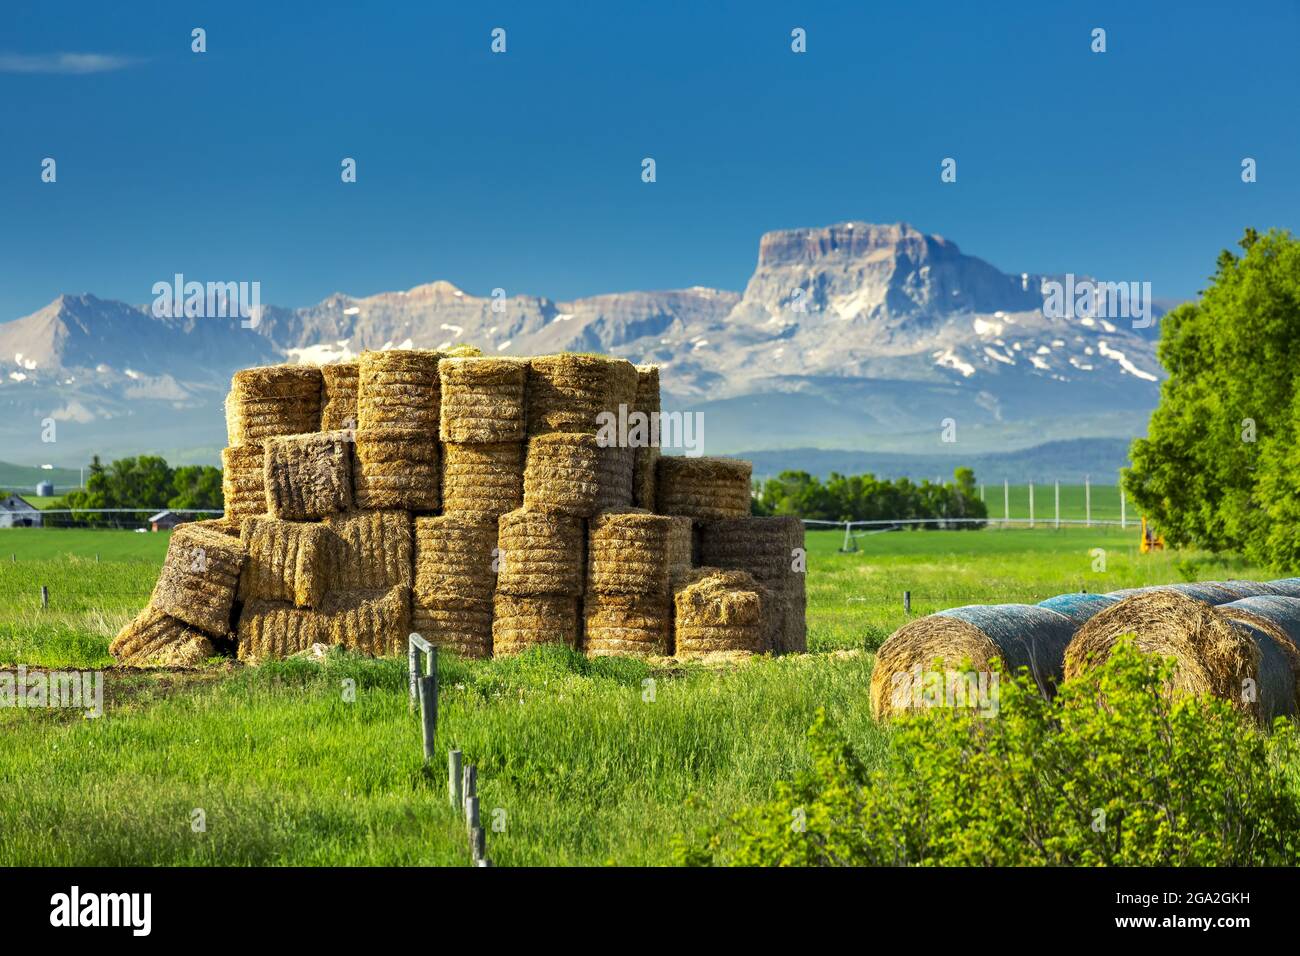 Bedeckte Heurollen neben einem Stapel quadratischer Heuballen in einem grasbewachsenen Feld mit blauem Himmel und den Rocky Mountains in der Ferne Stockfoto